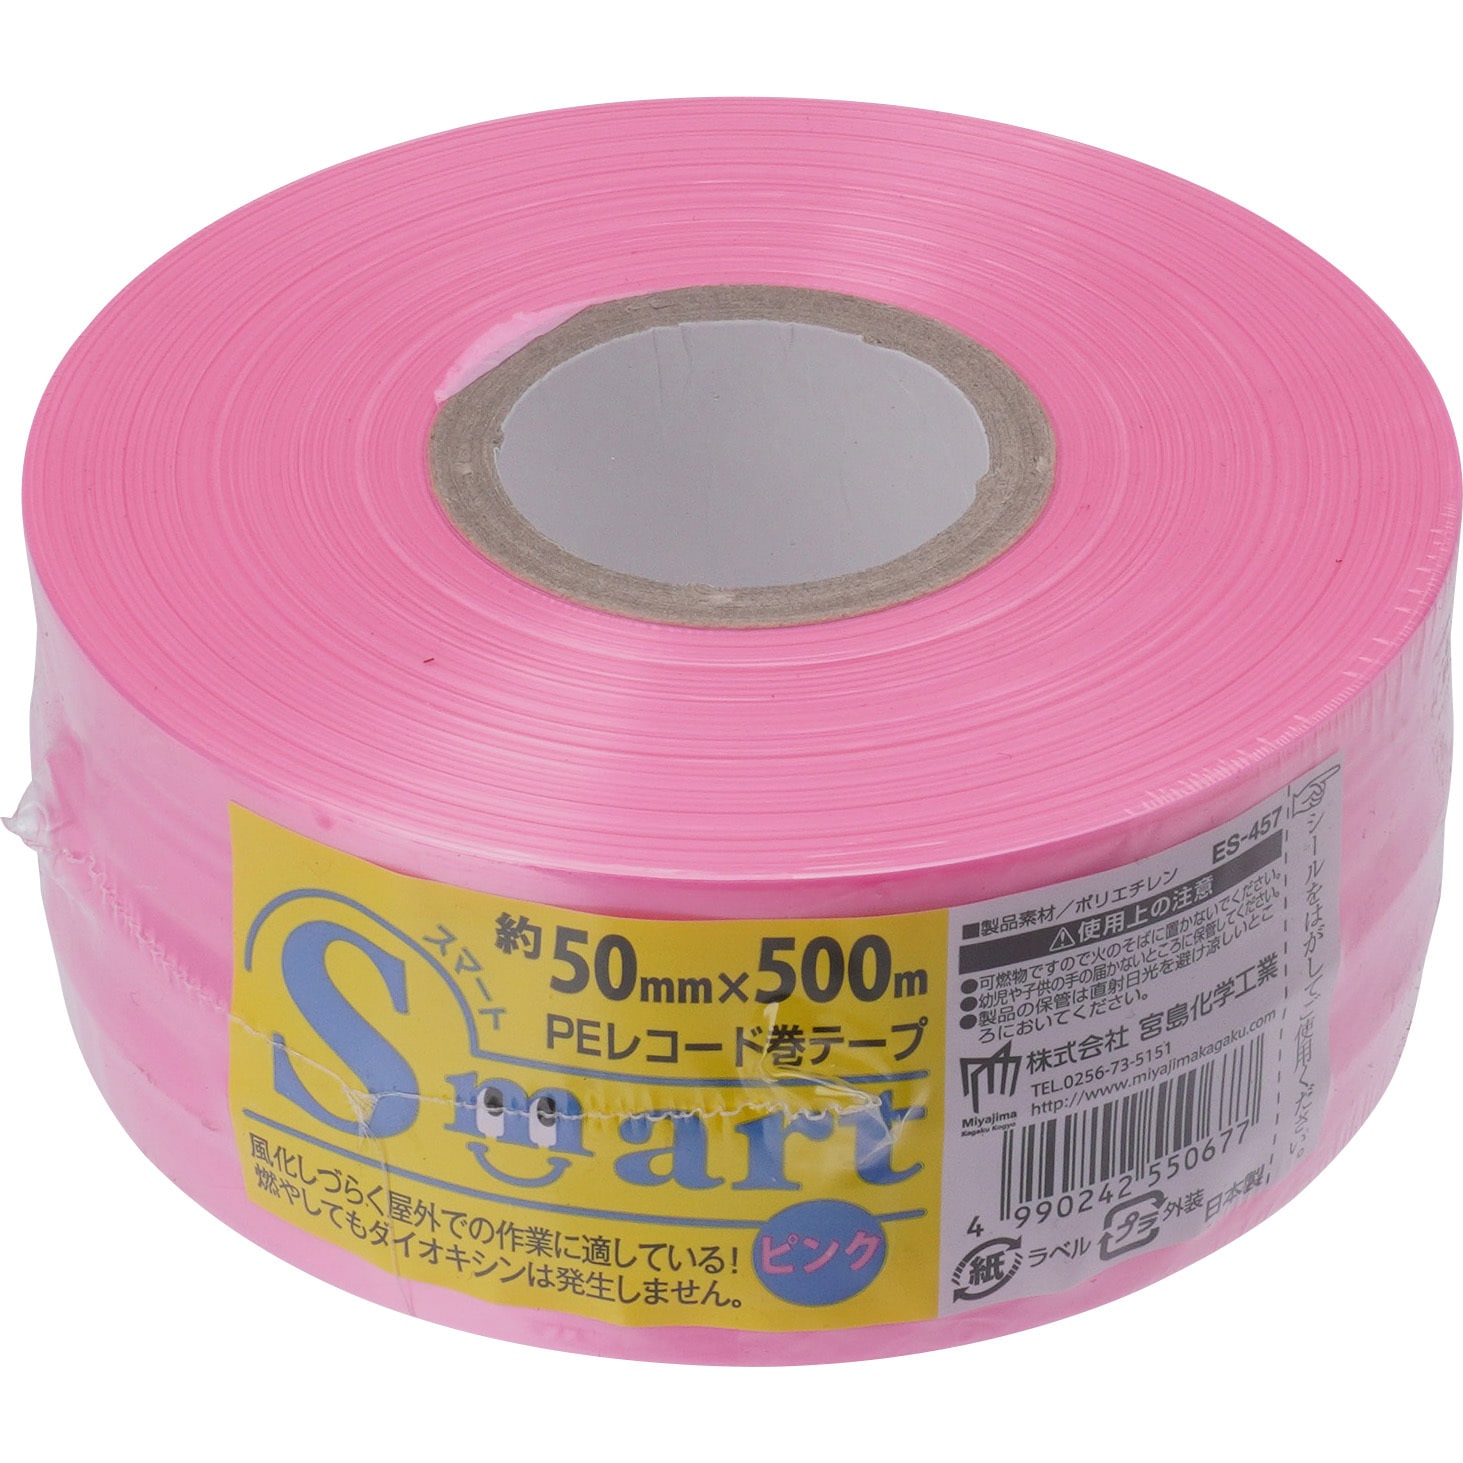 ローヤルシルバーテープ平巻ピンク50mm約500m30巻 - 1